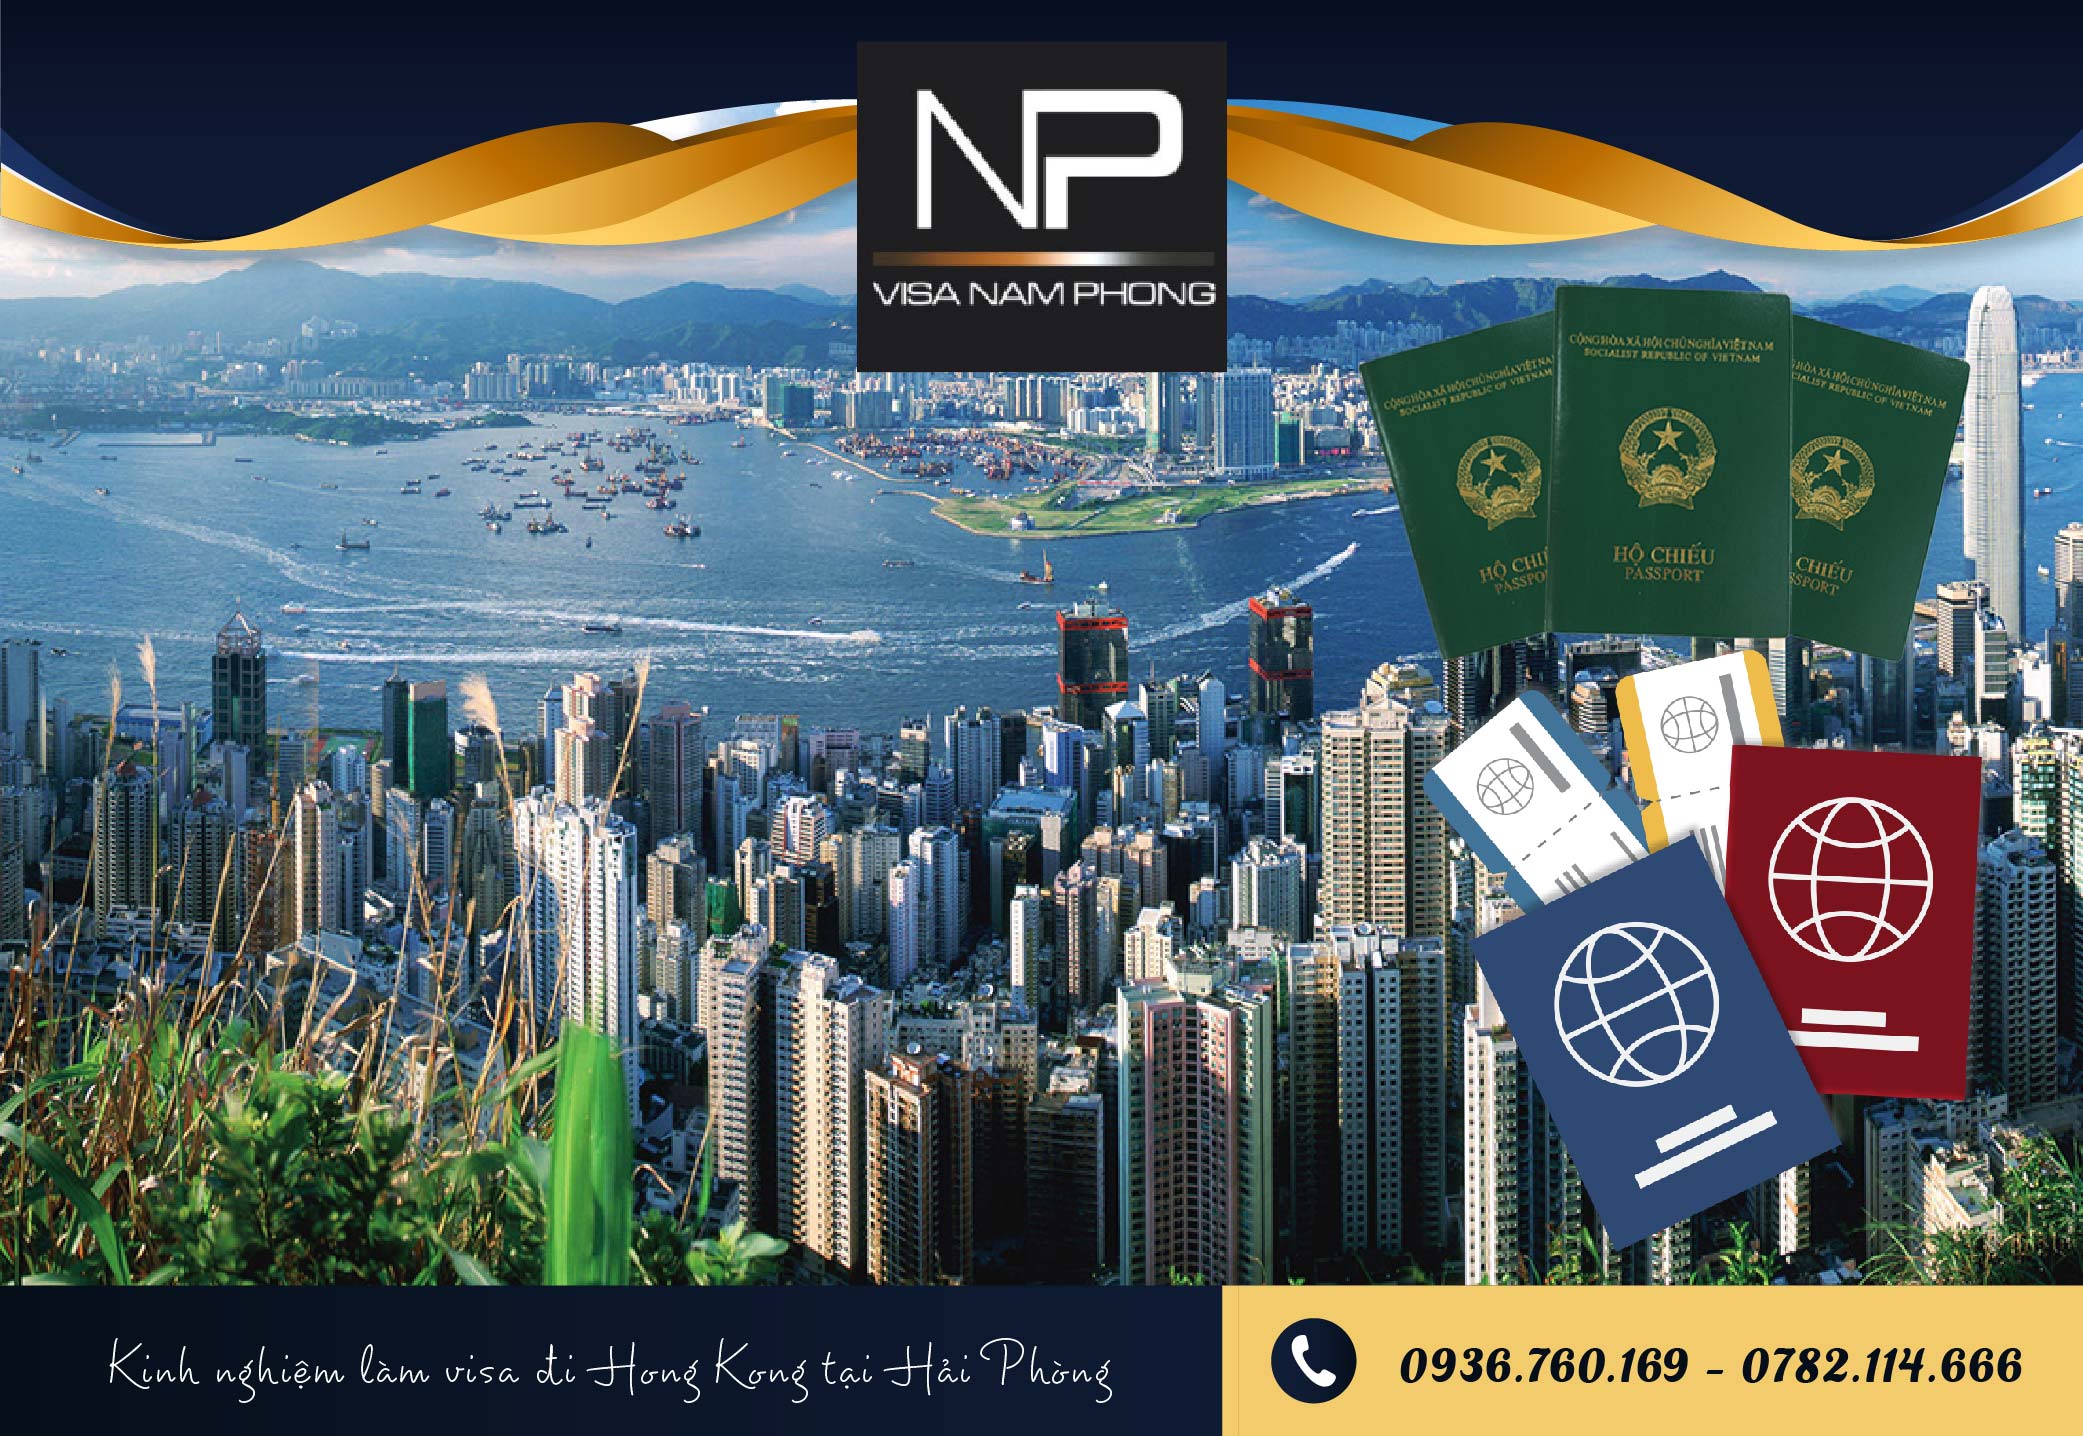 Kinh nghiệm làm visa đi Hong Kong tại Hải Phòng